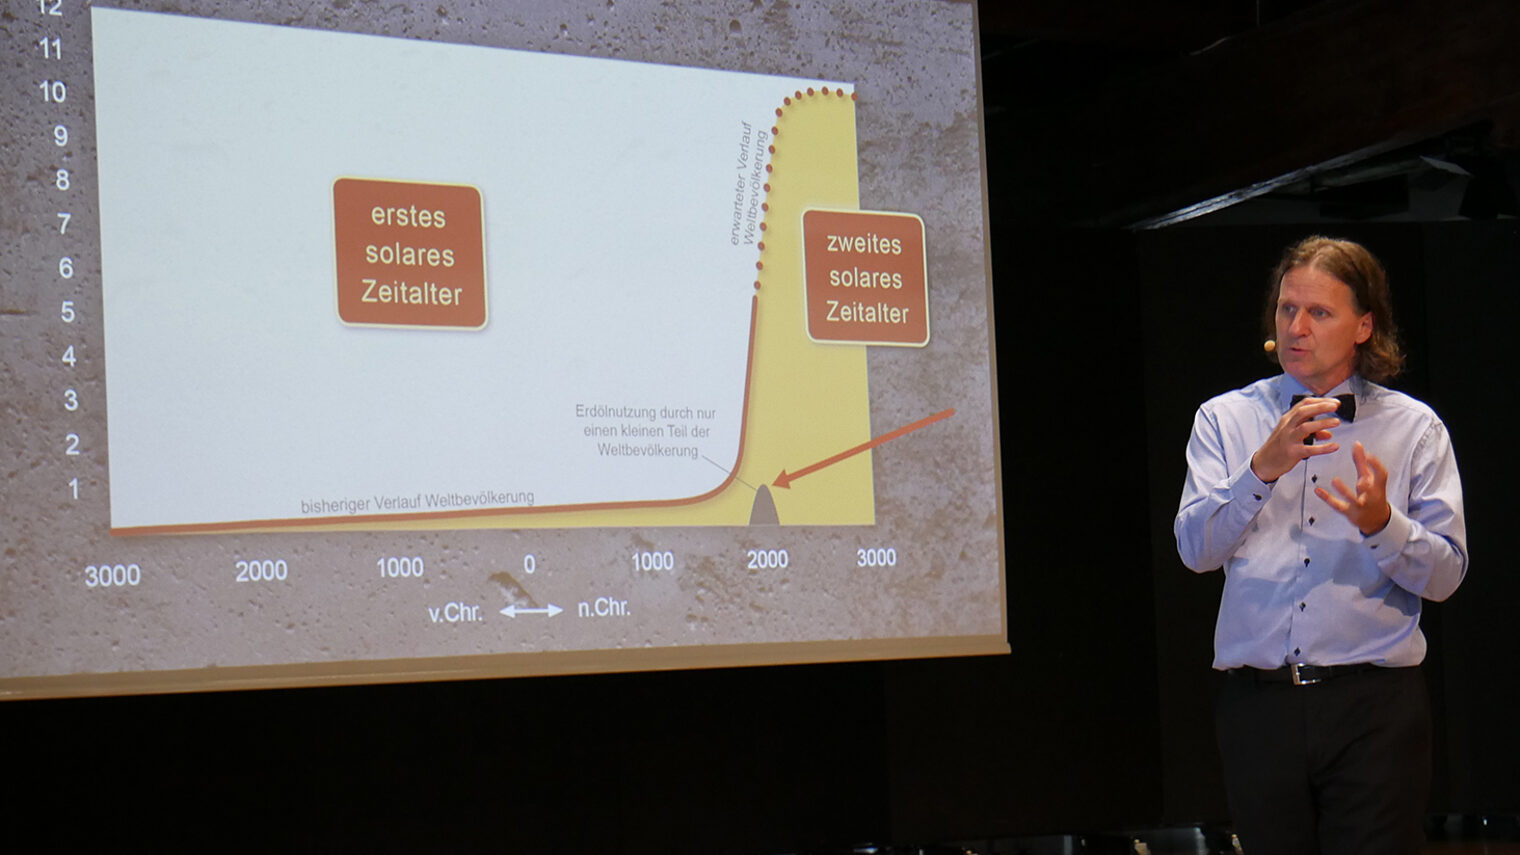 Timo Leukefeld hält Vortrag vor Leinwand mit Schaubild zu solaren Zeitaltern, Konzil Konstanz.